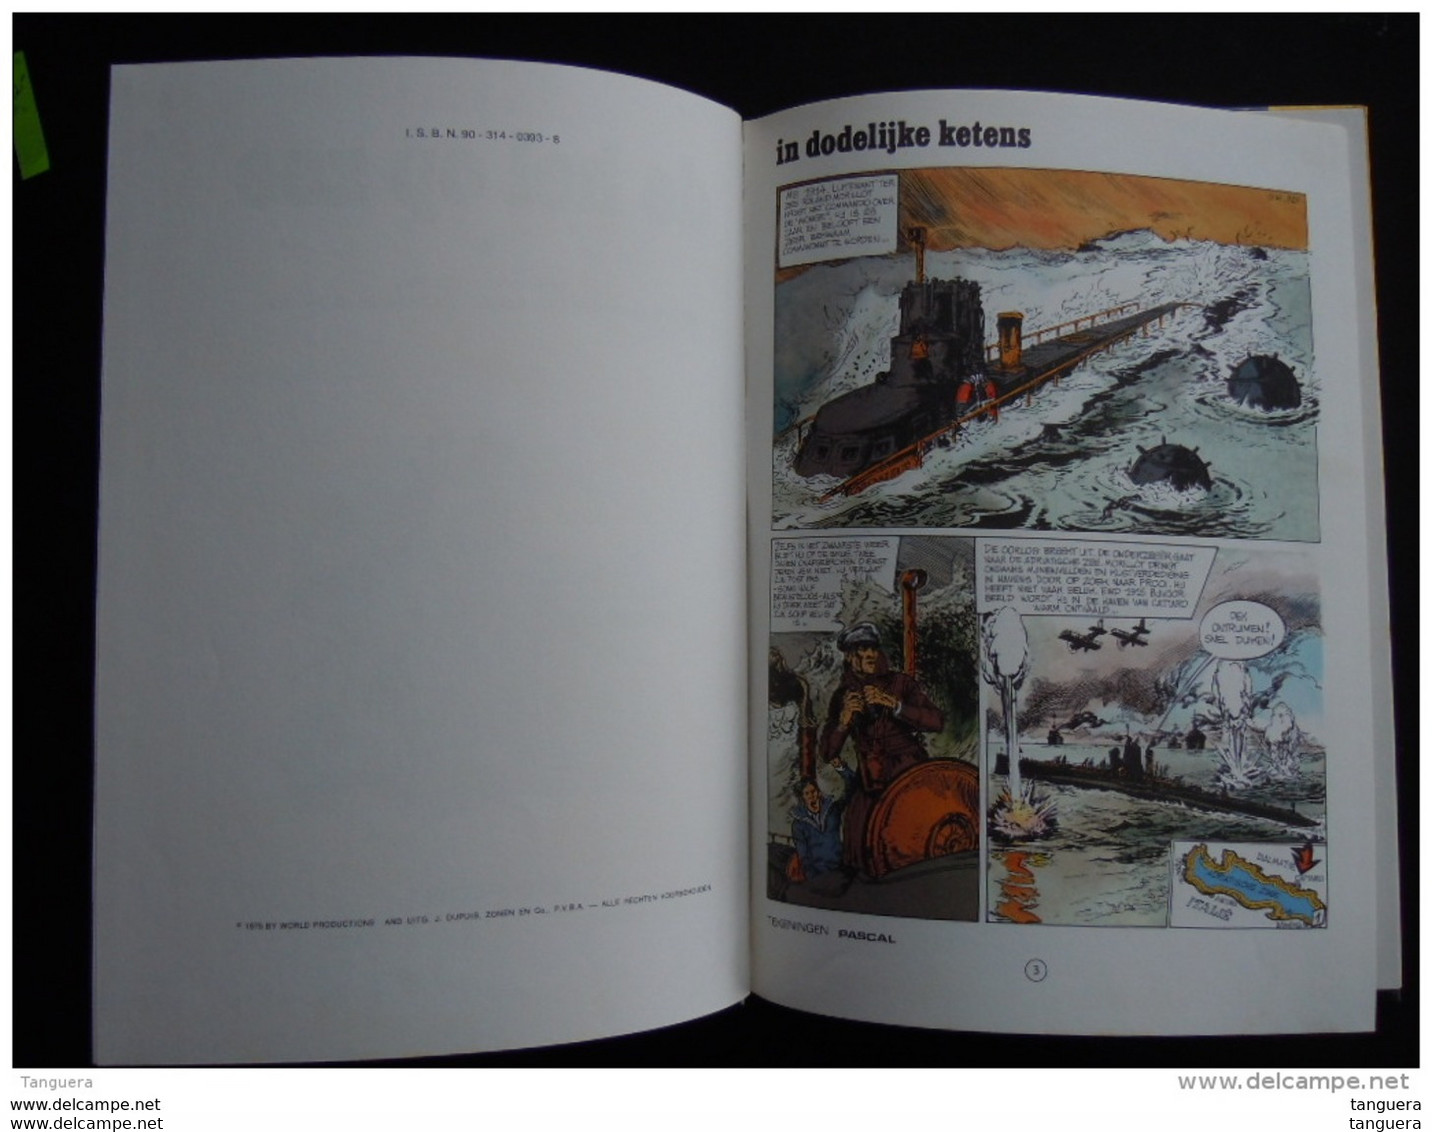 1975 Geschiedenis in beeldverhalen 4 de hel op zee Genadeloze oorlog op en onder water tekeningen Pascal Uitg Dupuis